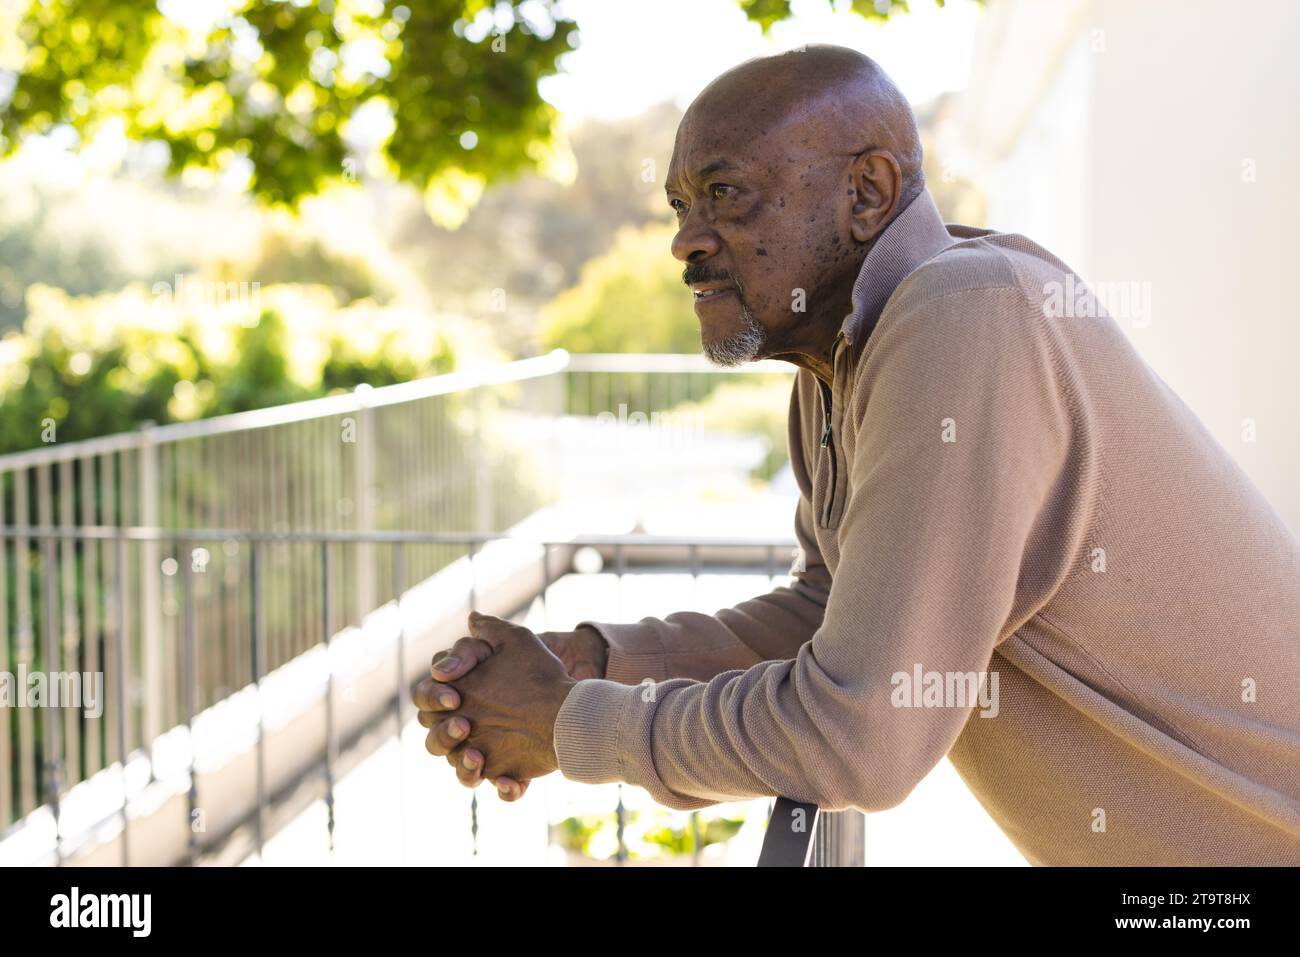 Profil eines afroamerikaners auf der Sonnenterrasse. Lebensstil, Ruhestand, Seniorenleben, Natur und häusliches Leben, unverändert. Stockfoto